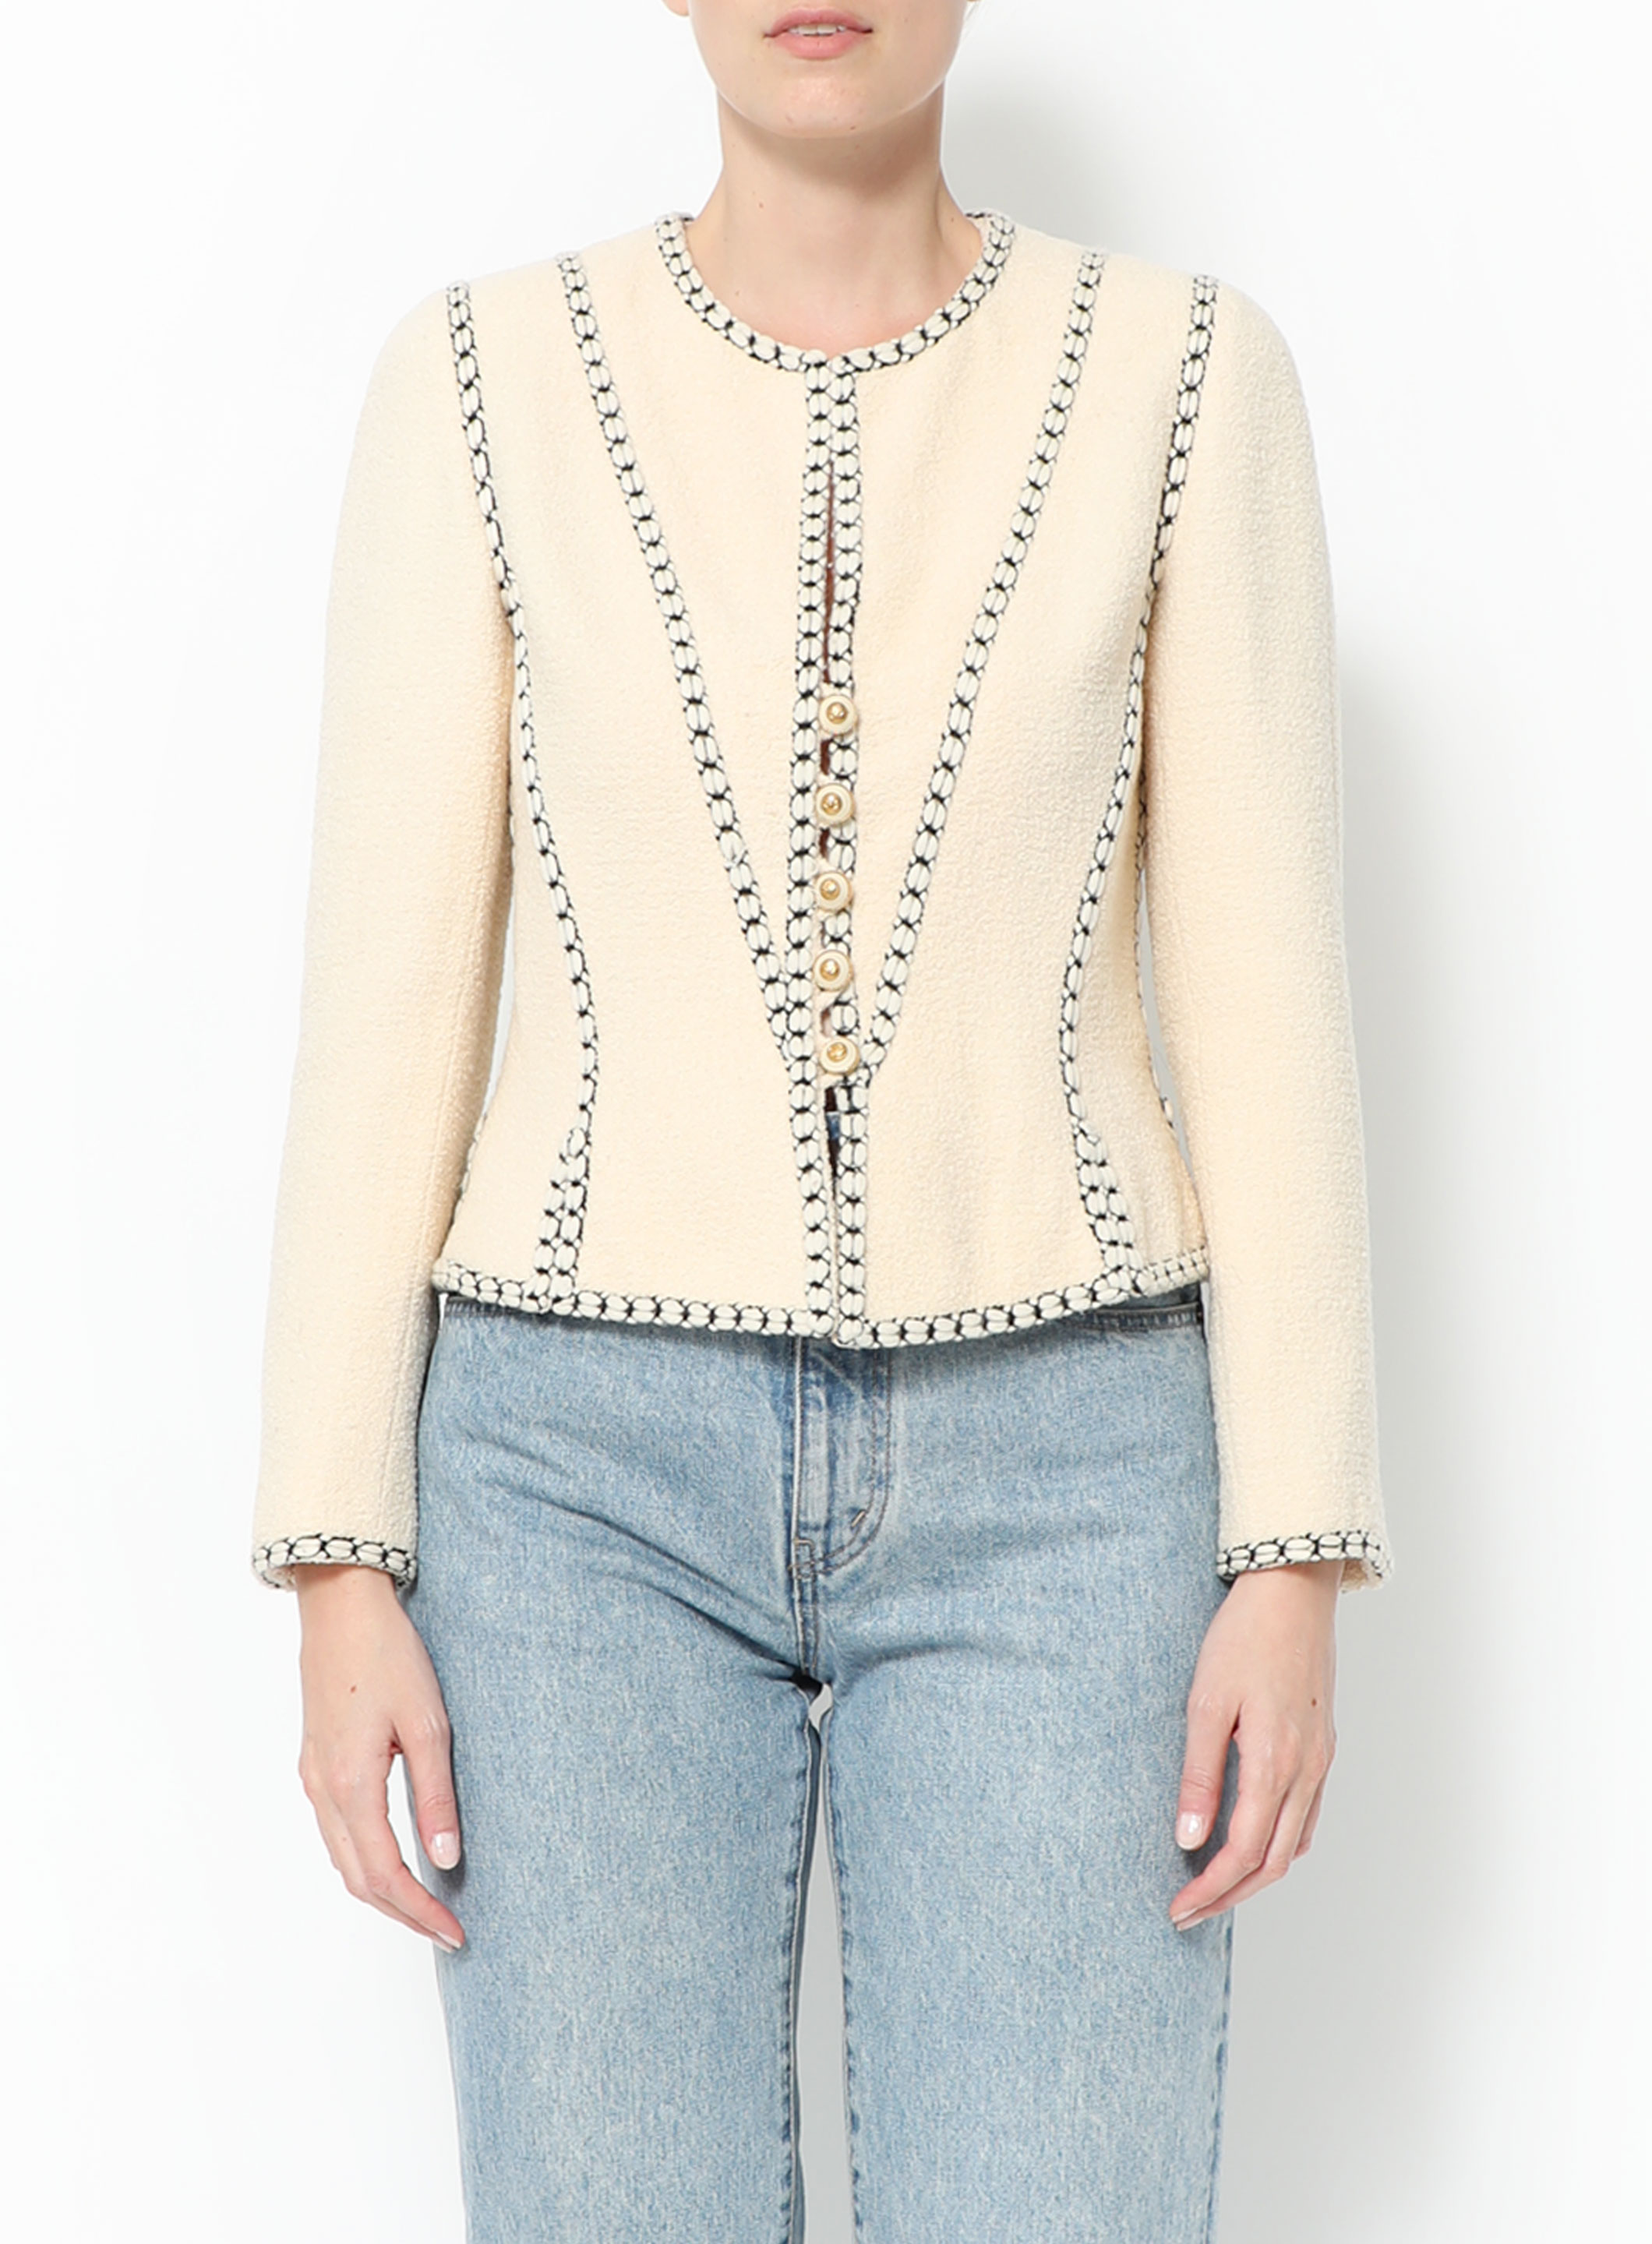 Chanel - Authenticated La Petite Veste Noire Jacket - Linen Beige for Women, Very Good Condition